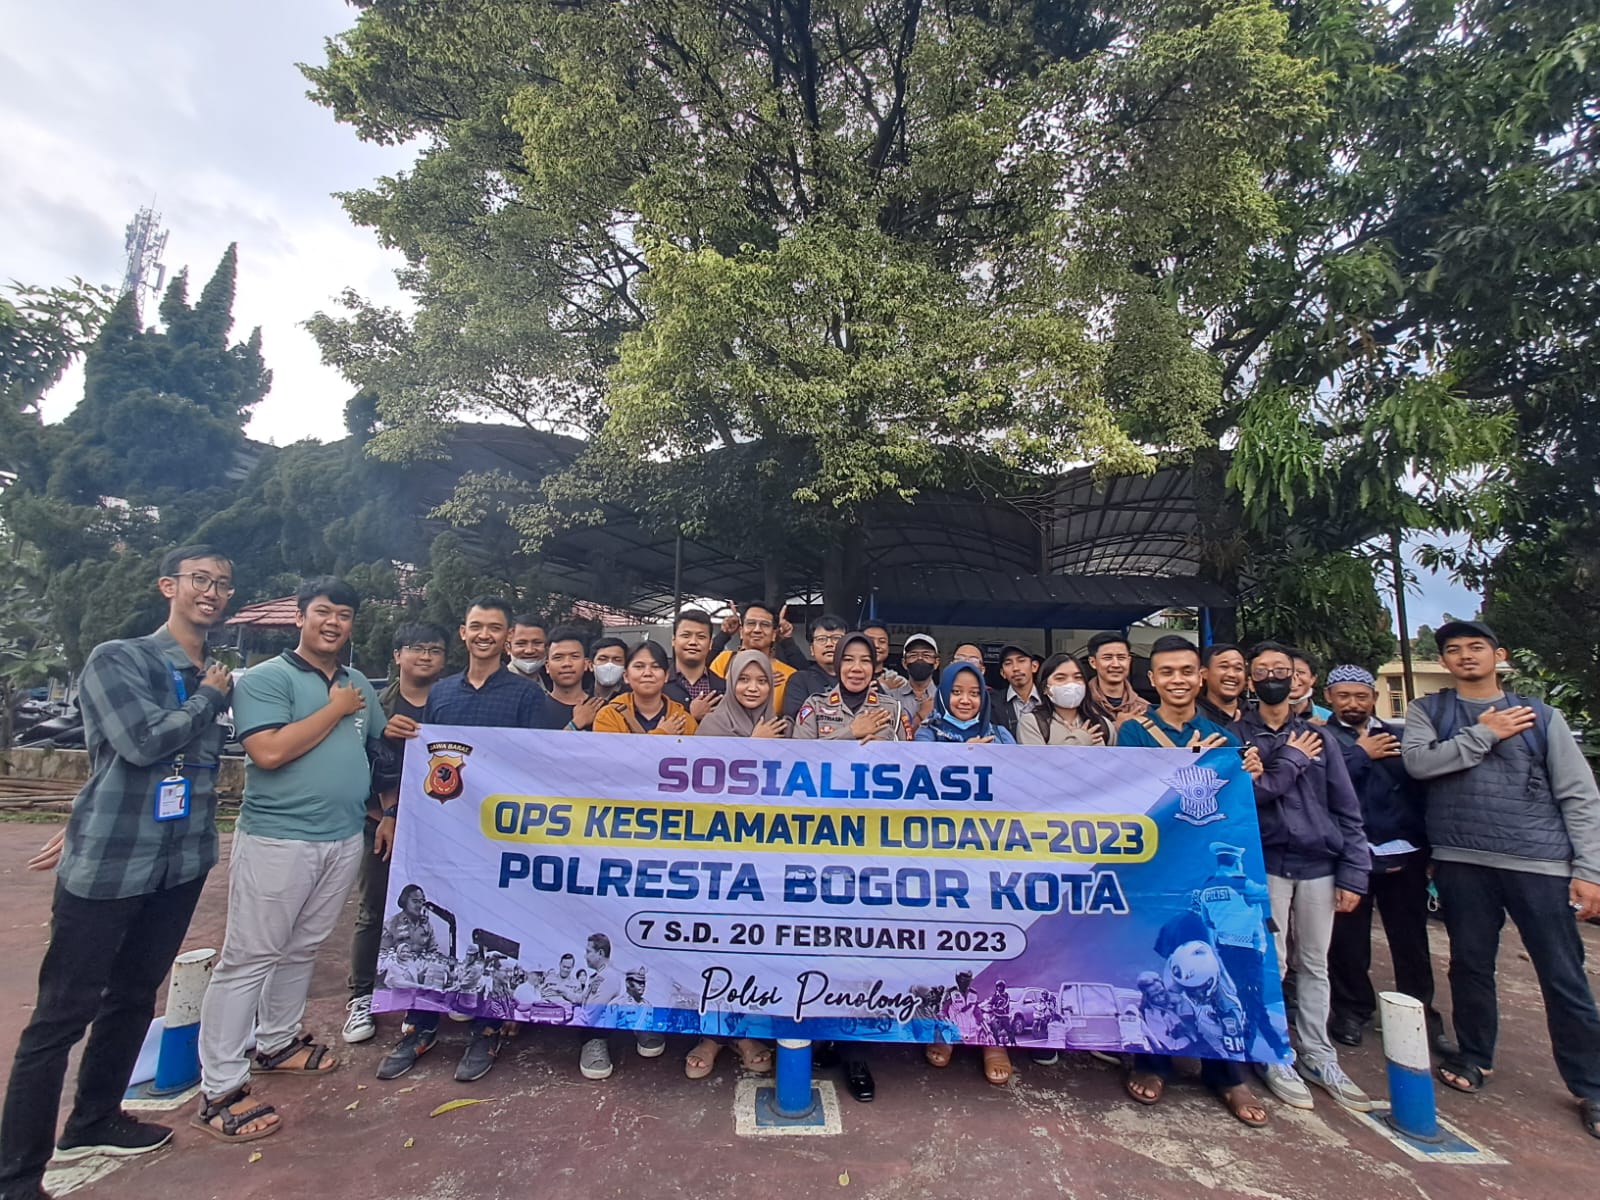 Satlantas Polresta Bogor Kota Gelar Kegiatan Safety Driving dalam rangka Ops Keselamatan Lodaya 2023